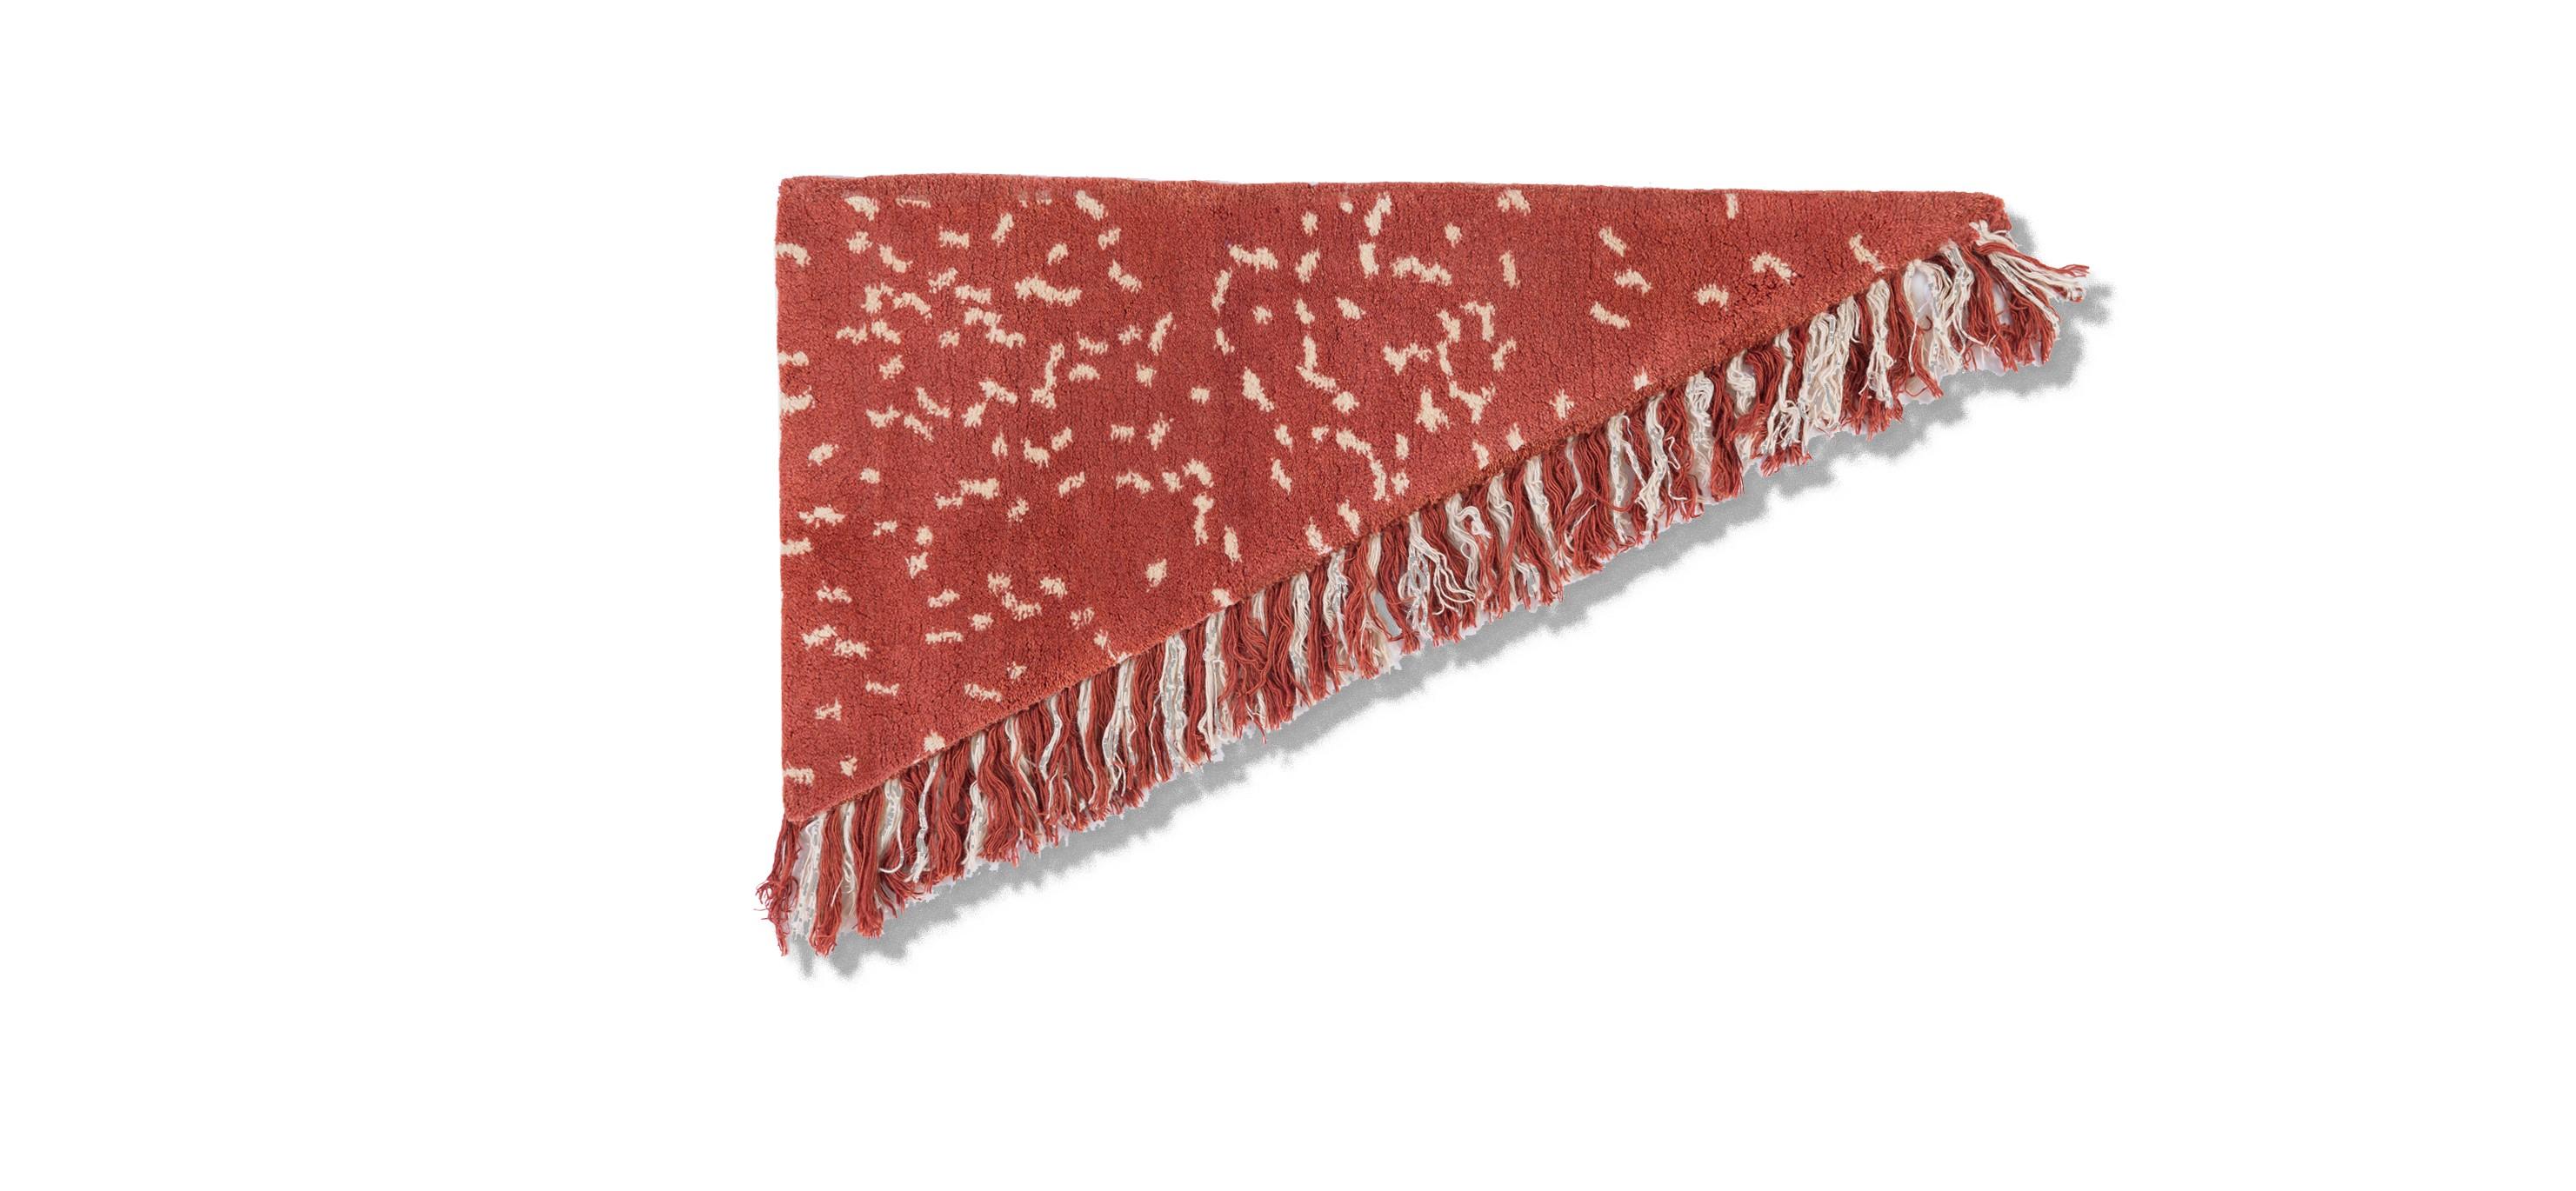 Nr. 272 freeplay handgeknüpfter Teppich von Lyk Carpet
Abmessungen: L 60 x B 120 cm.
MATERIALIEN: 100% tibetische Hochlandwolle, handgekämmte und handgesponnene Schurwolle, natürliche pflanzengefärbte Wolle, 100 Knoten pro Quadratzoll.
Handgeknüpfte